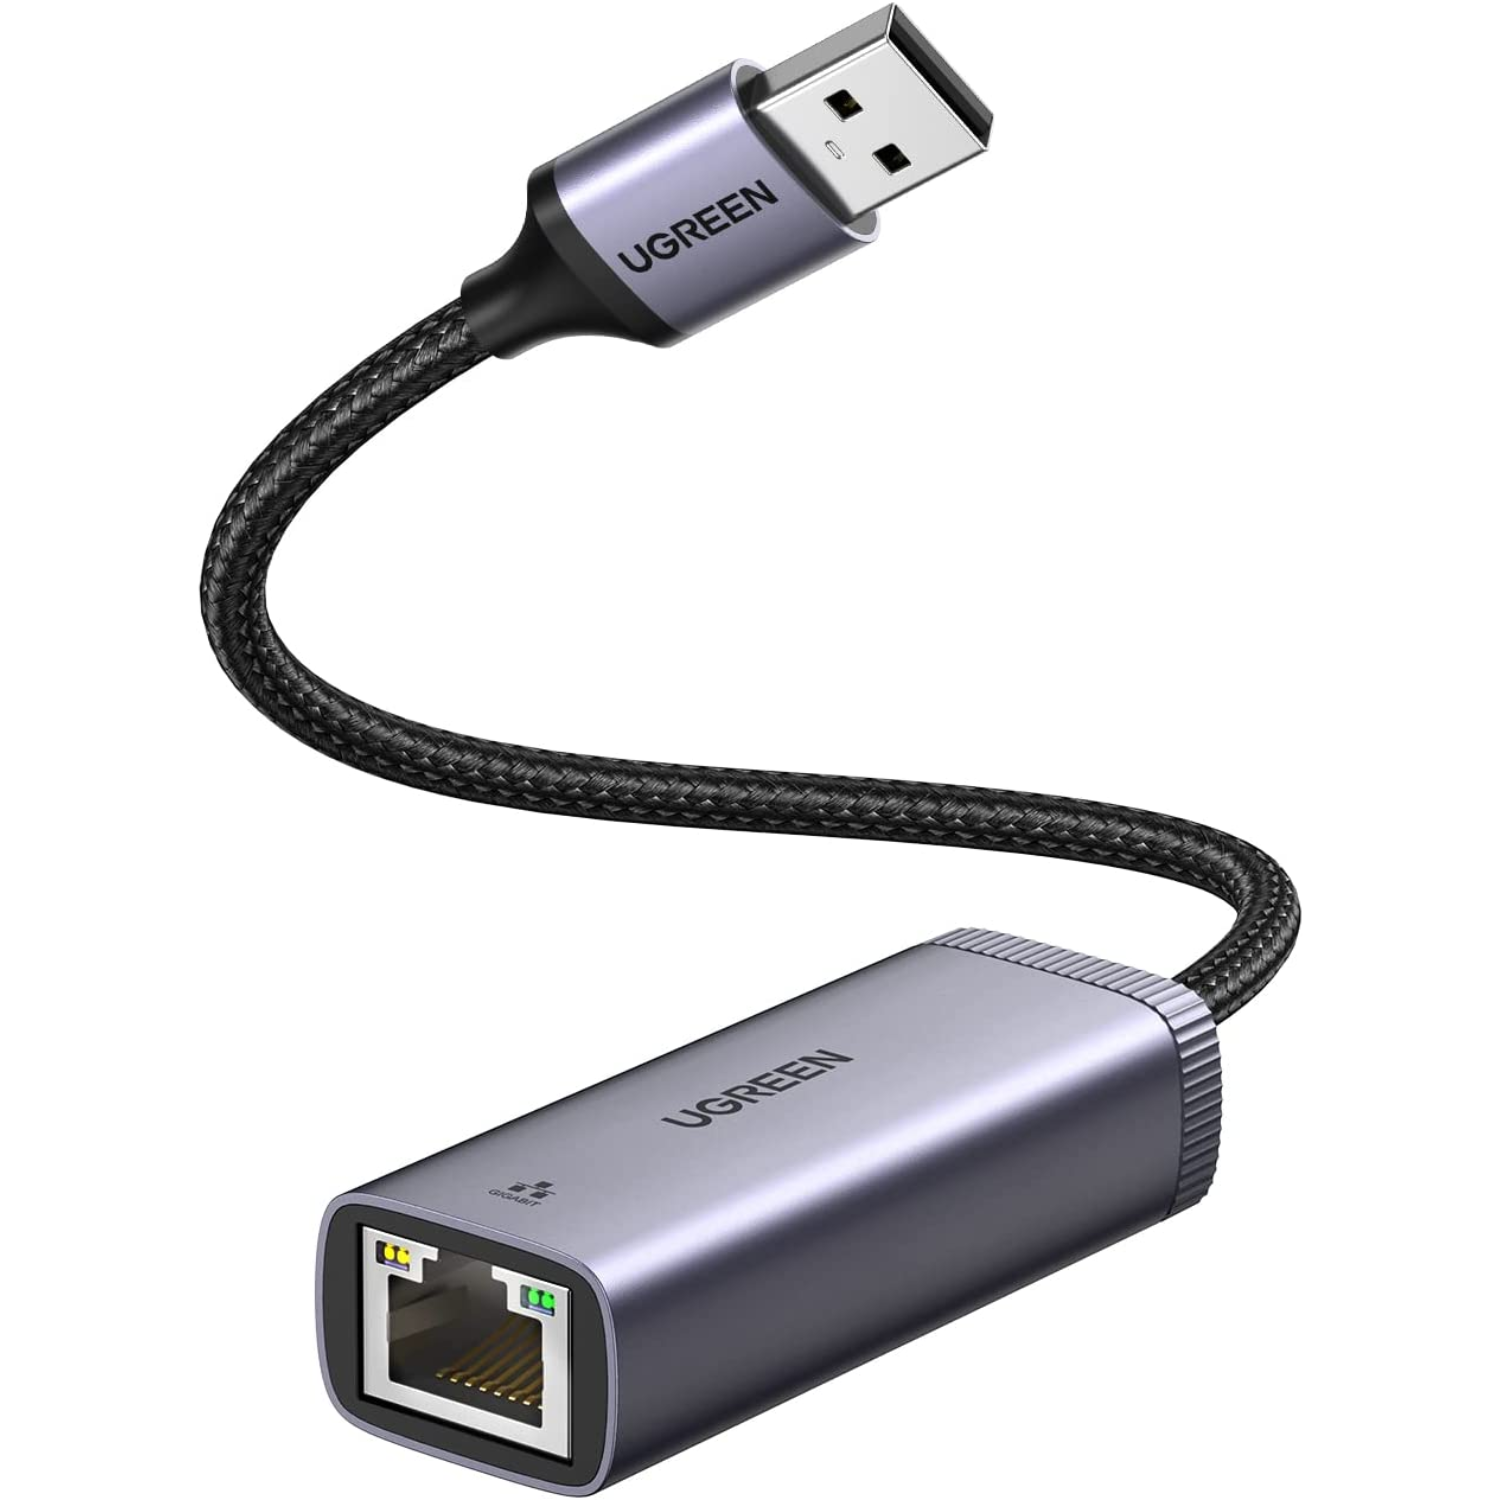 3,0 Adaptador USB A a USB C para Iphone 11 12 Pro Xr Se, Ipad 8 Air 4,  transferencia de datos de alta velocidad y carga rápida, compatible con PC,  cargador, banco